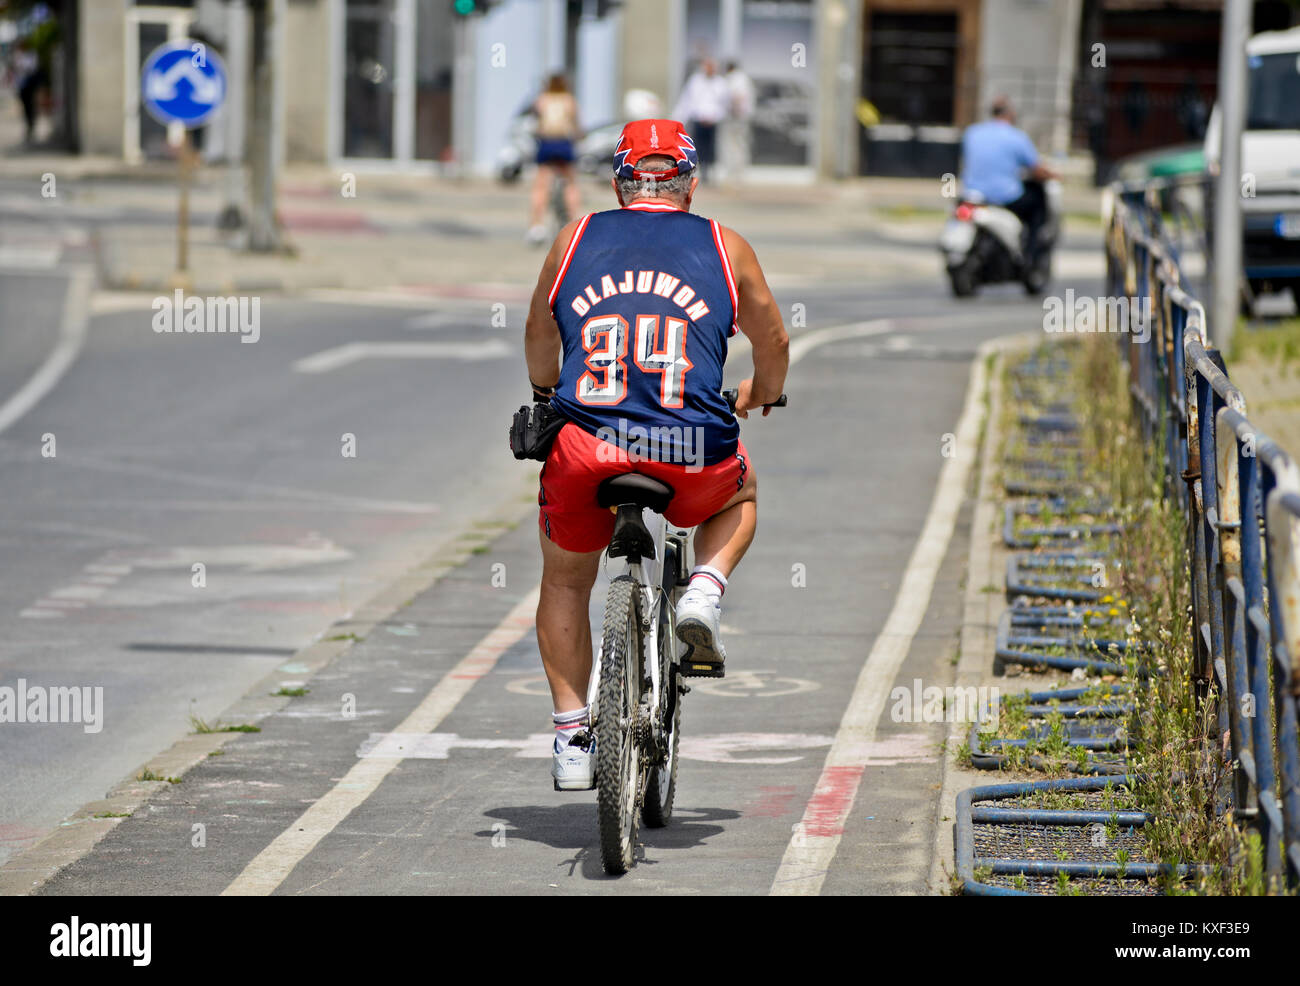 Un homme monté sur un vélo portant un maillot de basket-ball, Hakeem Olajuwon (Houston Rockets). Skopje, Macédoine Banque D'Images